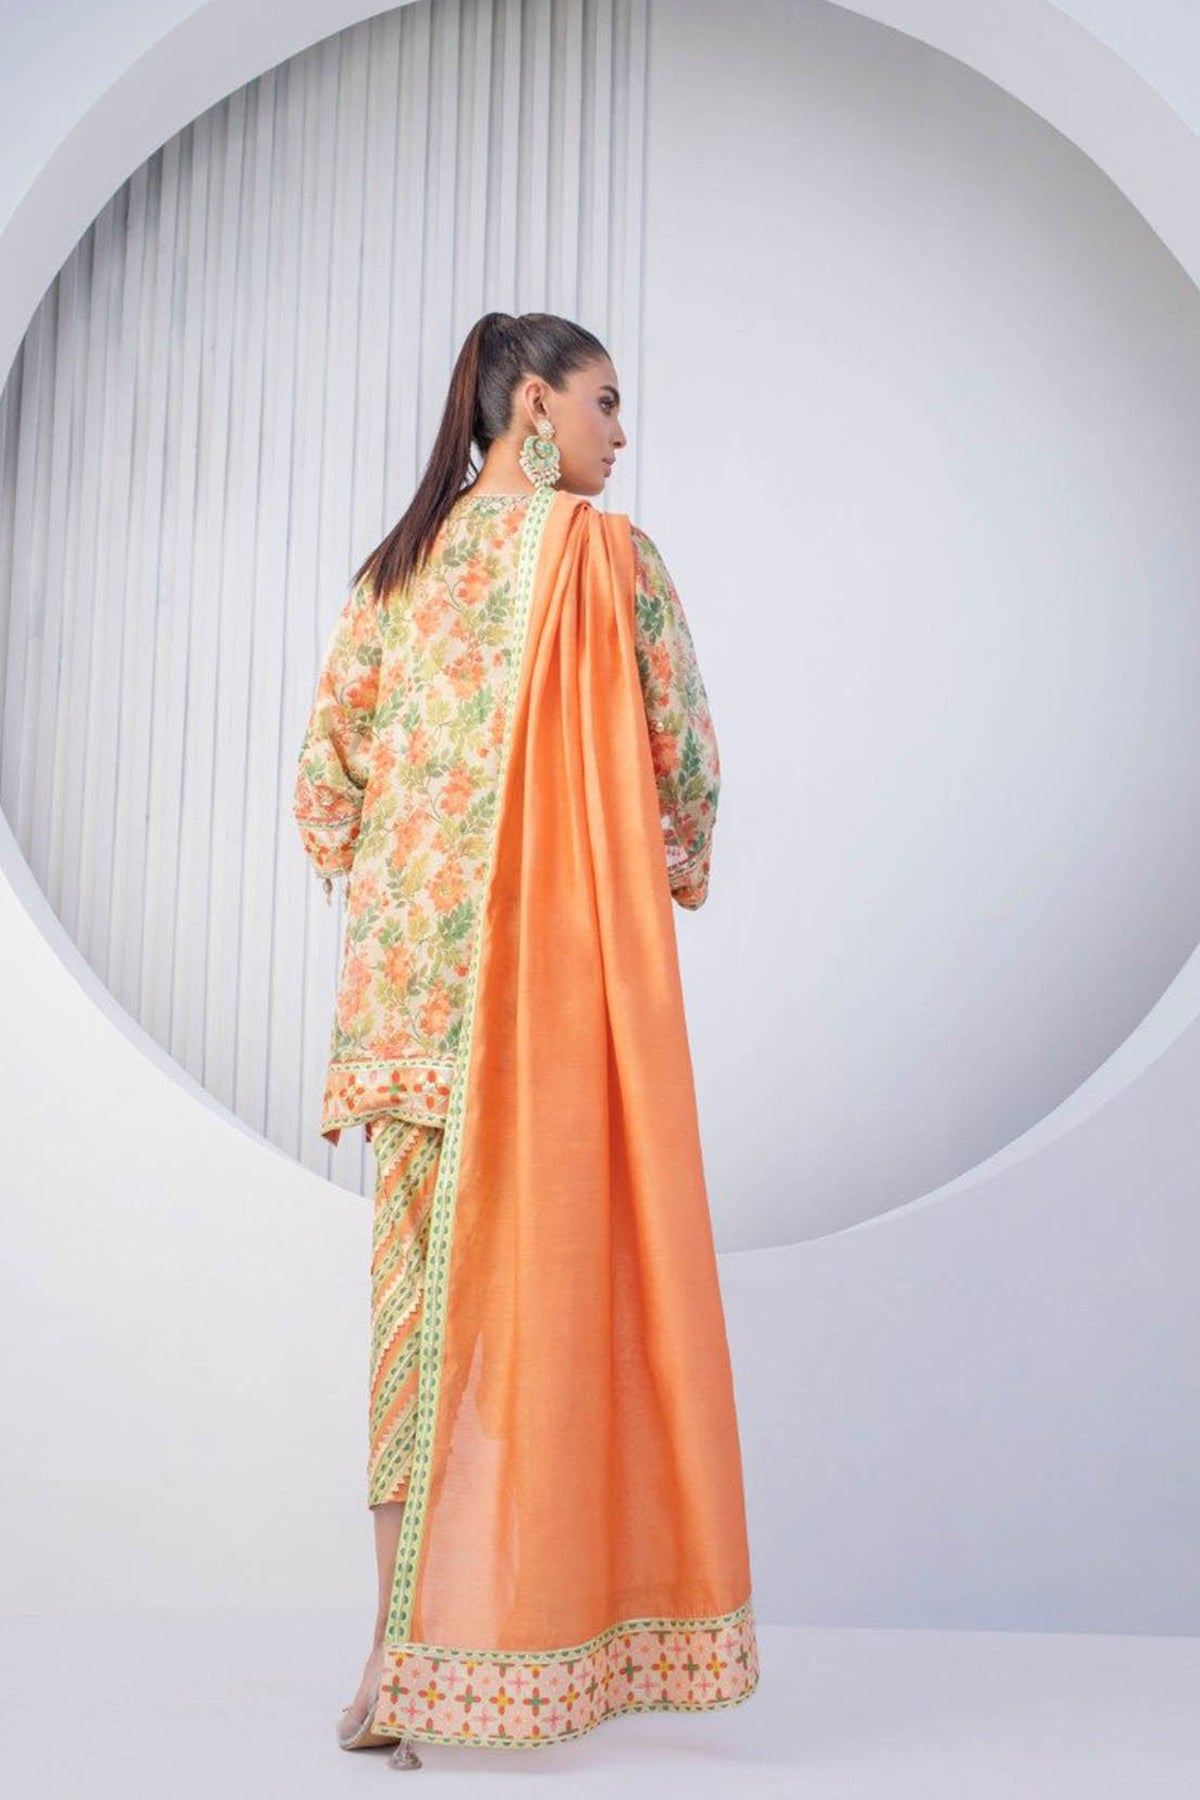 Tangerine Cotton Net Kurta with Shalwar - Sania Maskatiya